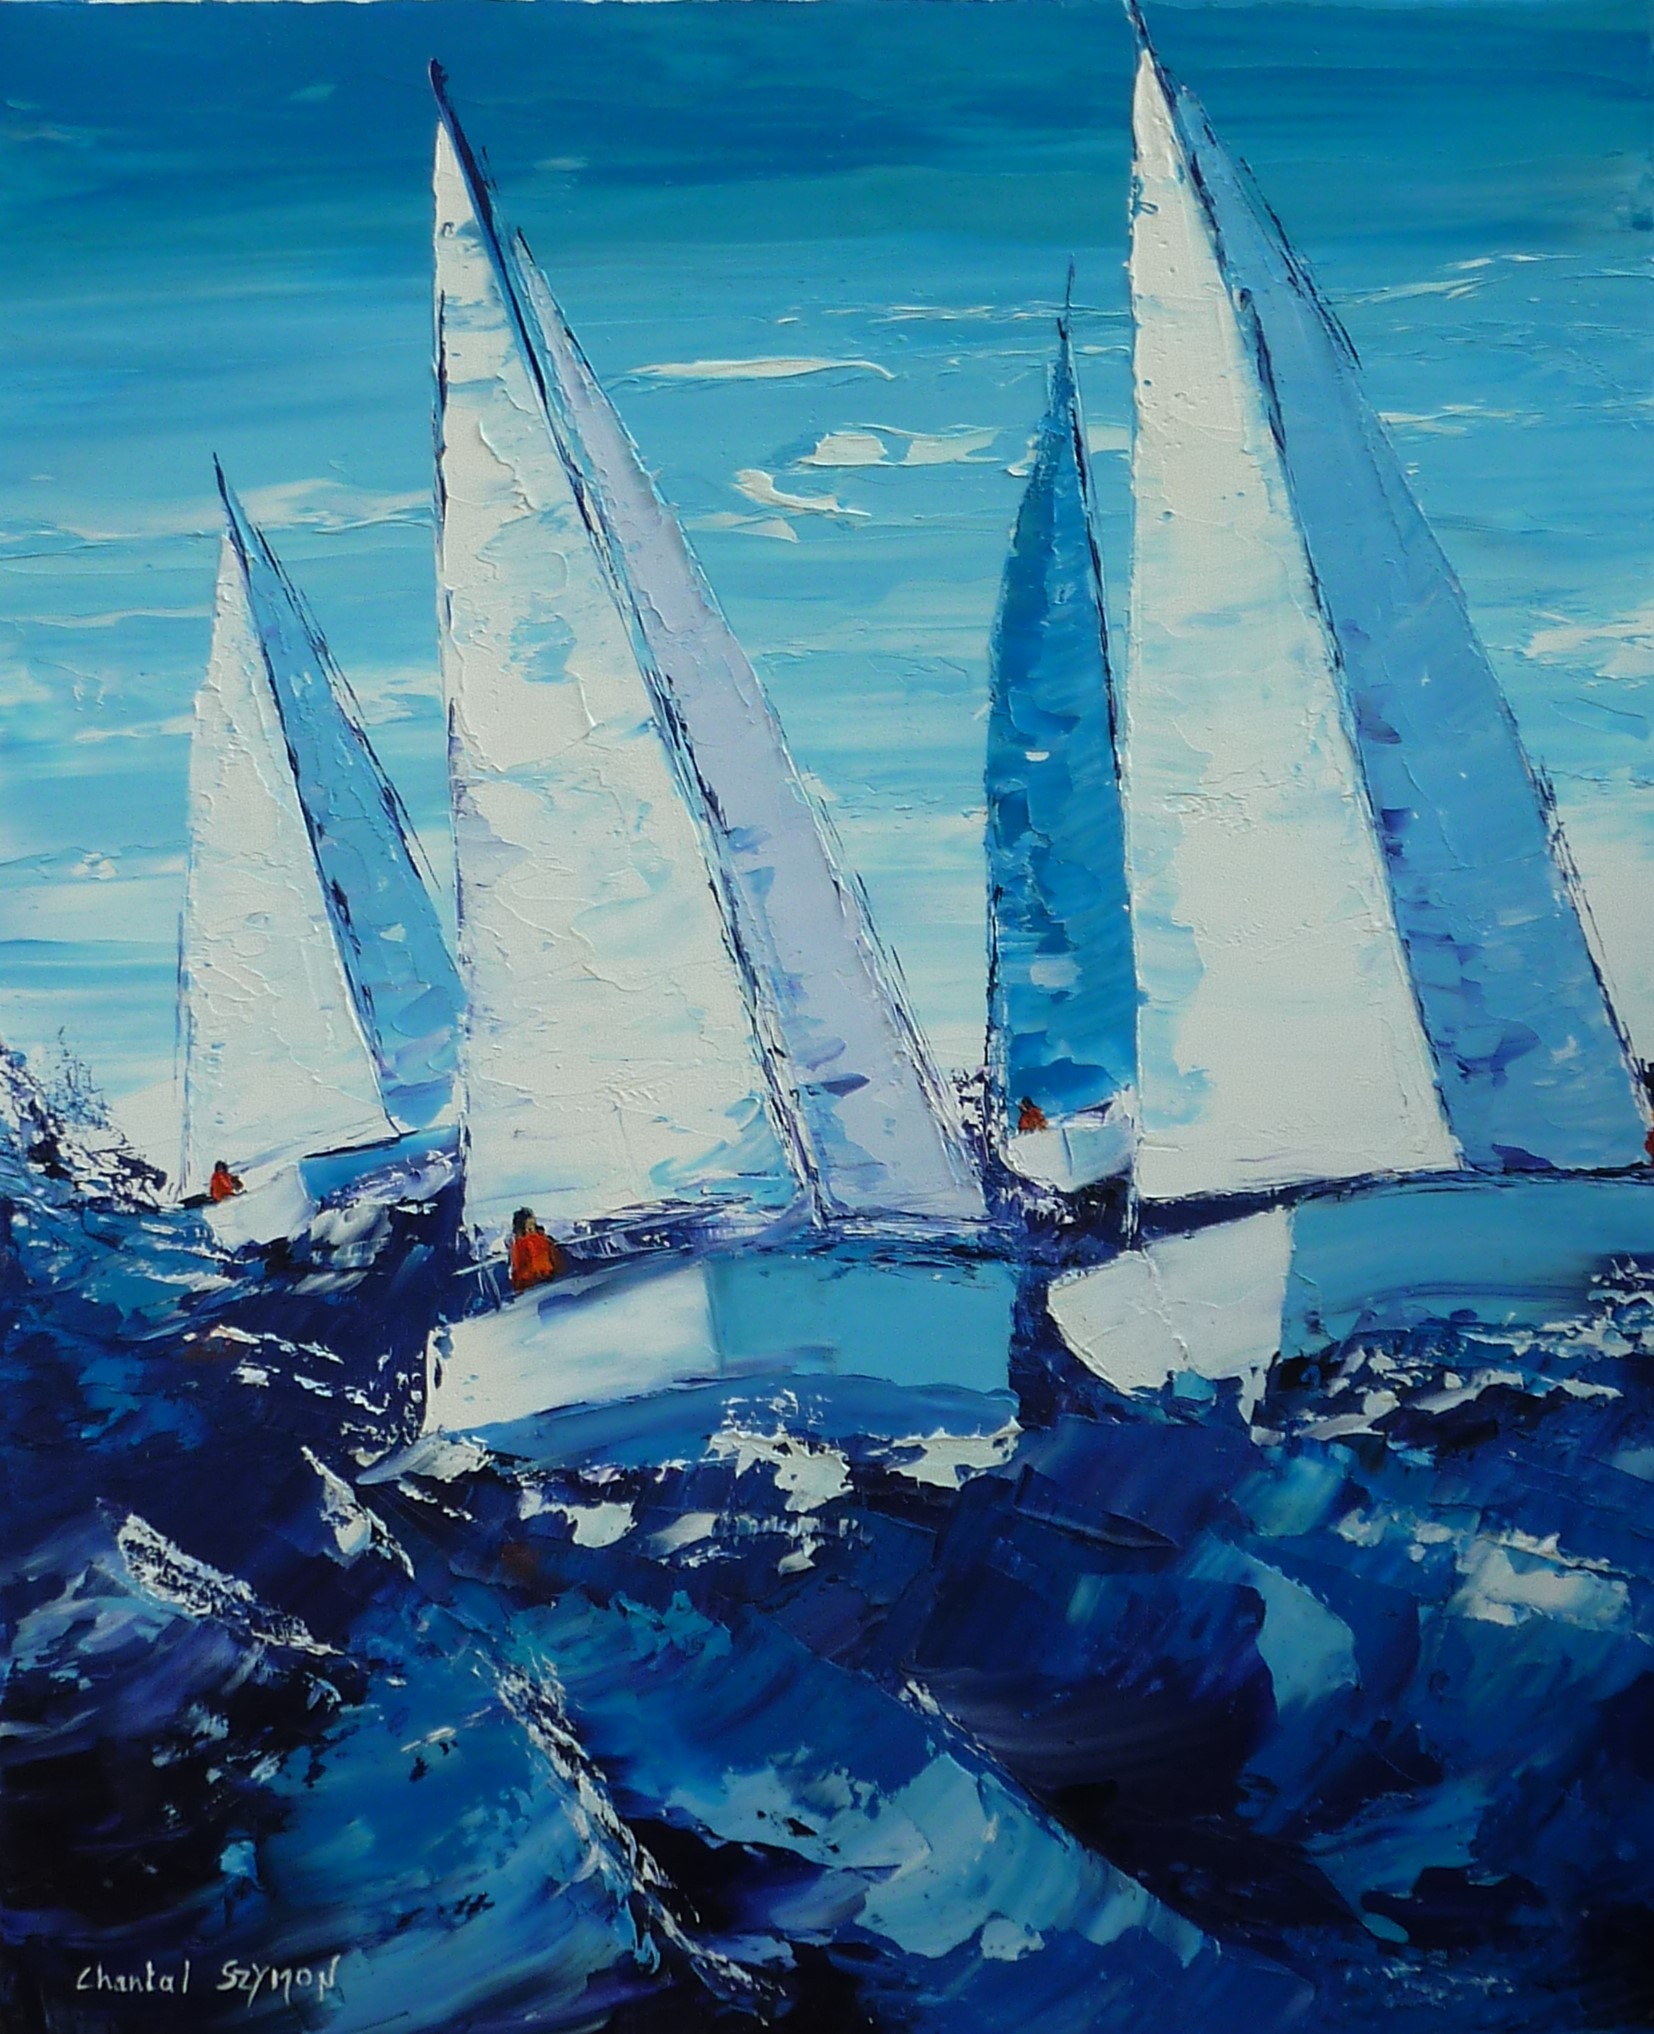 chantal szymoniak artiste peintre peinture a lhuile peinture au couteau ocean mer bateau voiliers regate course de bateau bleu tempete camaieu de bleu